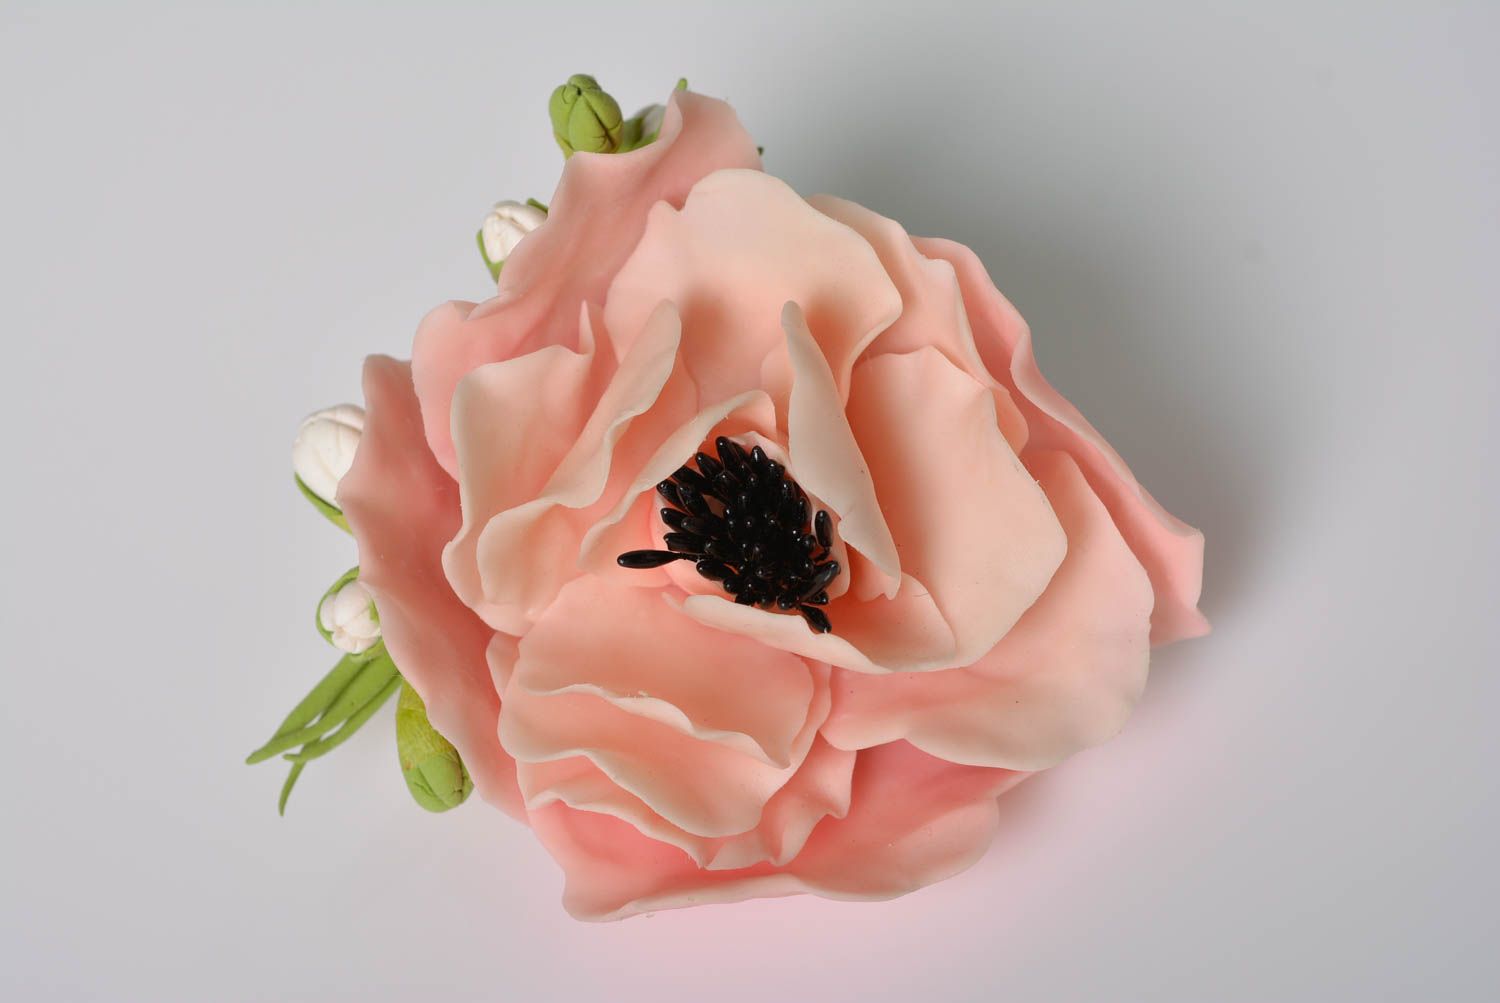 Брошь из холодного фарфора цветочная авторская ручной работы с розовым маком фото 5